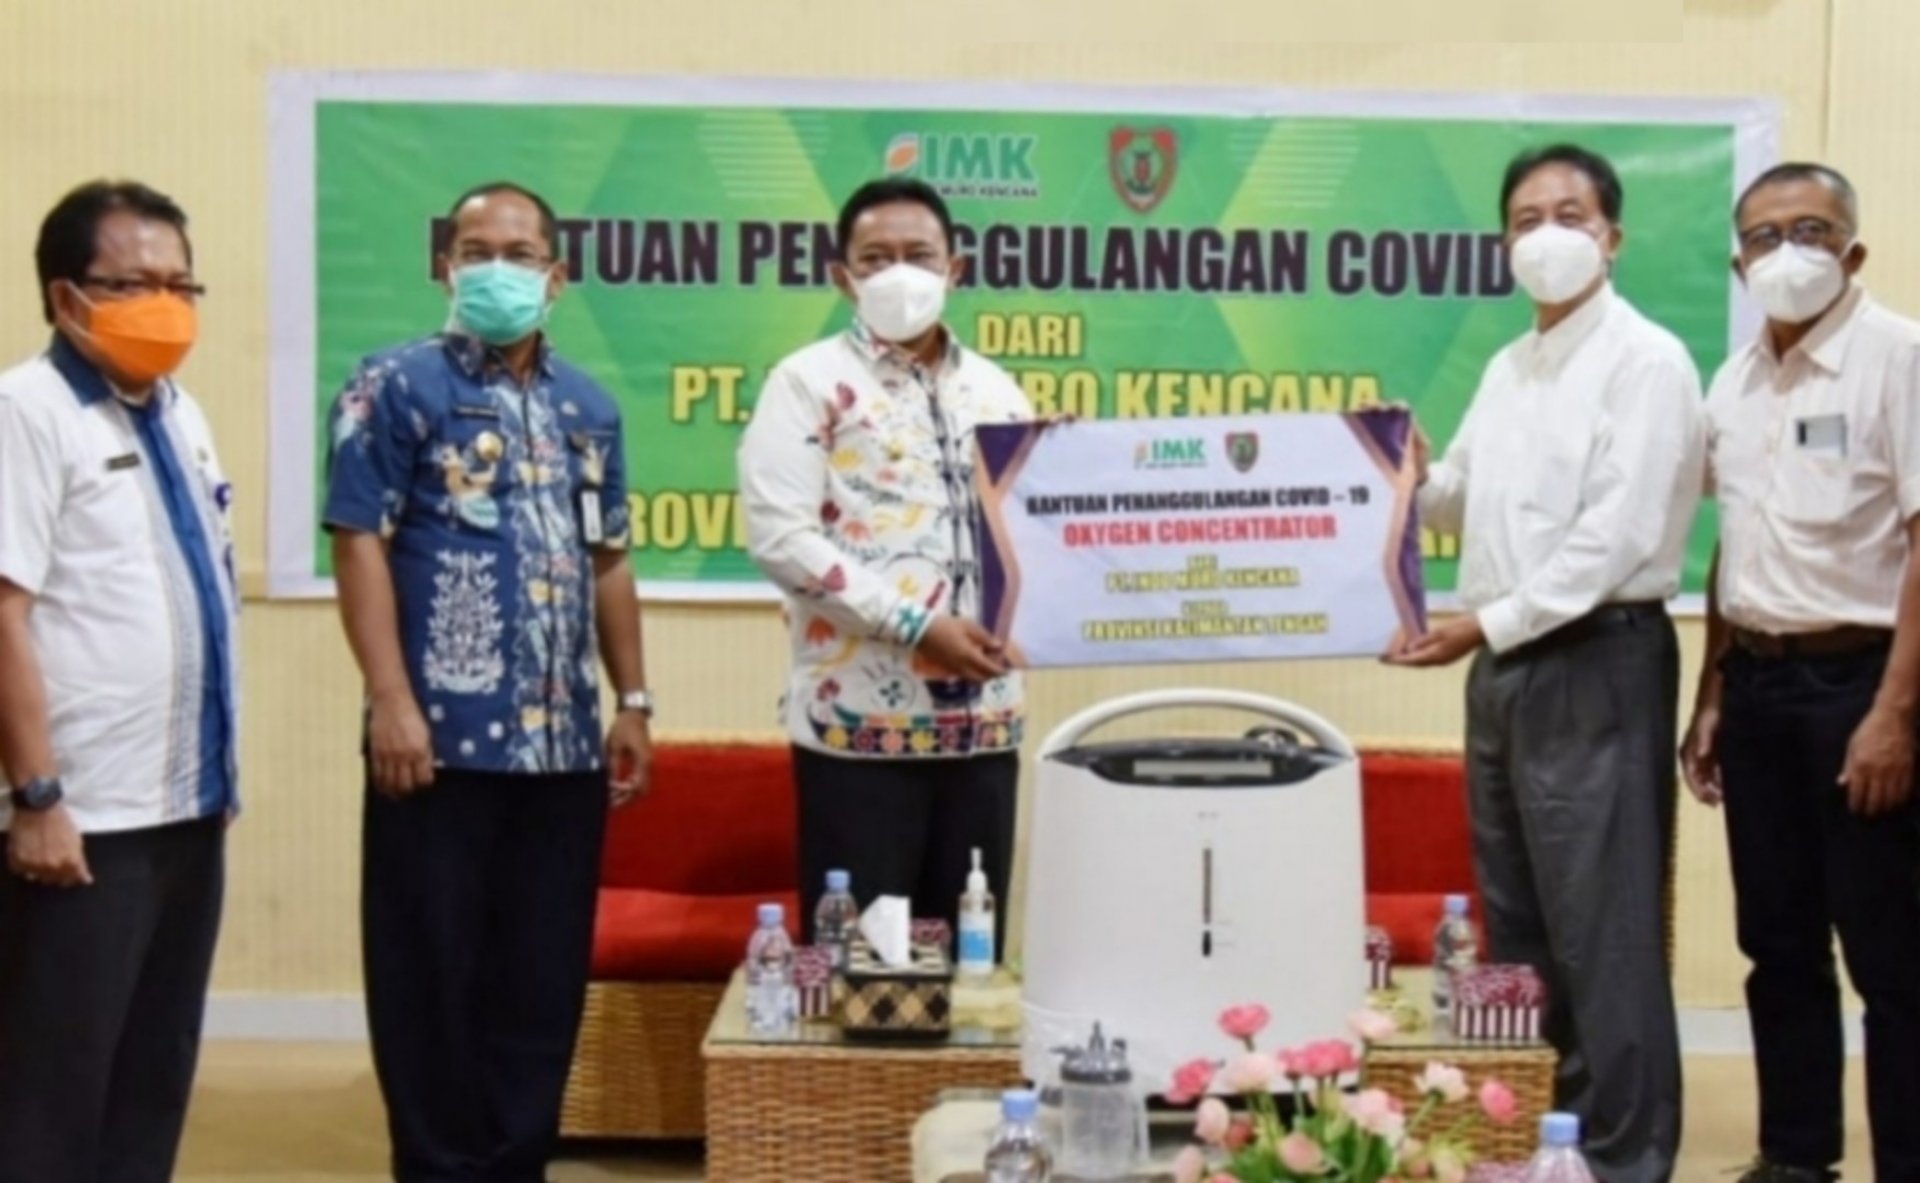 Pemprov Kalteng Terima Bantuan 30 Konsentrator Oksigen dari PT Indo Muro Kencana untuk Dukung Penanganan COVID-19